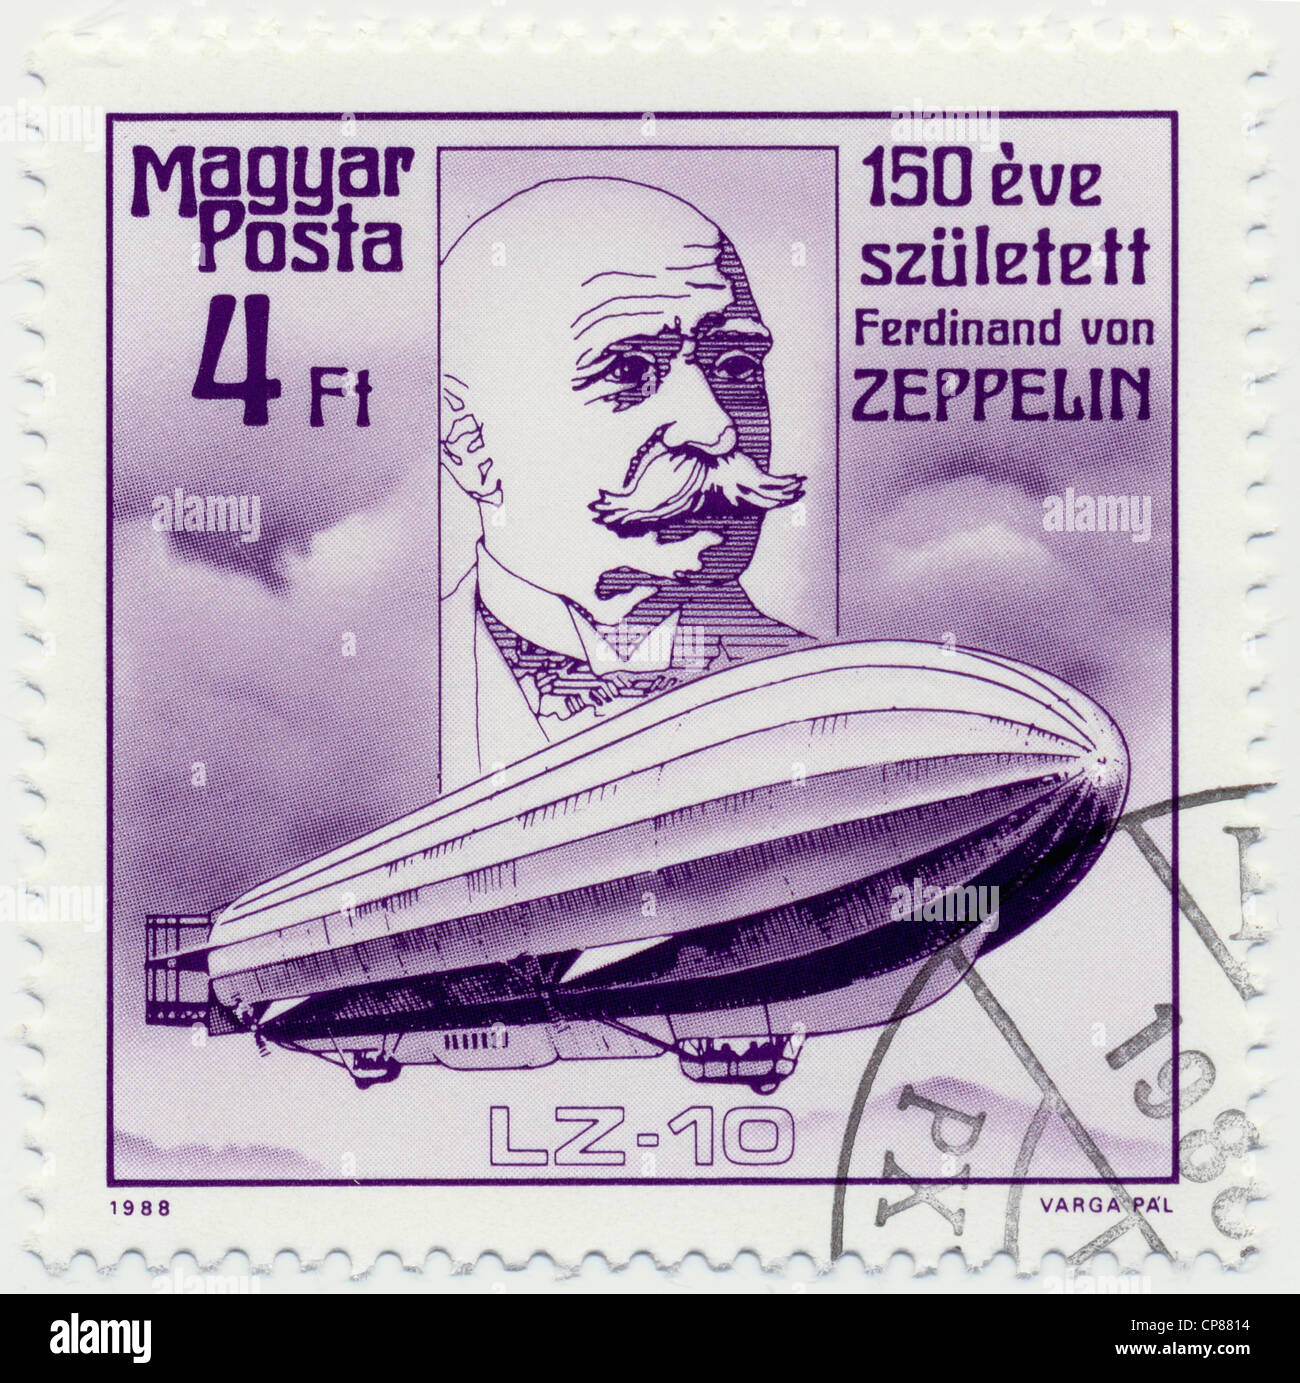 Historic postage stamps from Hungary, Historische Briefmarke, Ferdinand Graf von Zeppelin, 1988, Ungarn, Europa Stock Photo